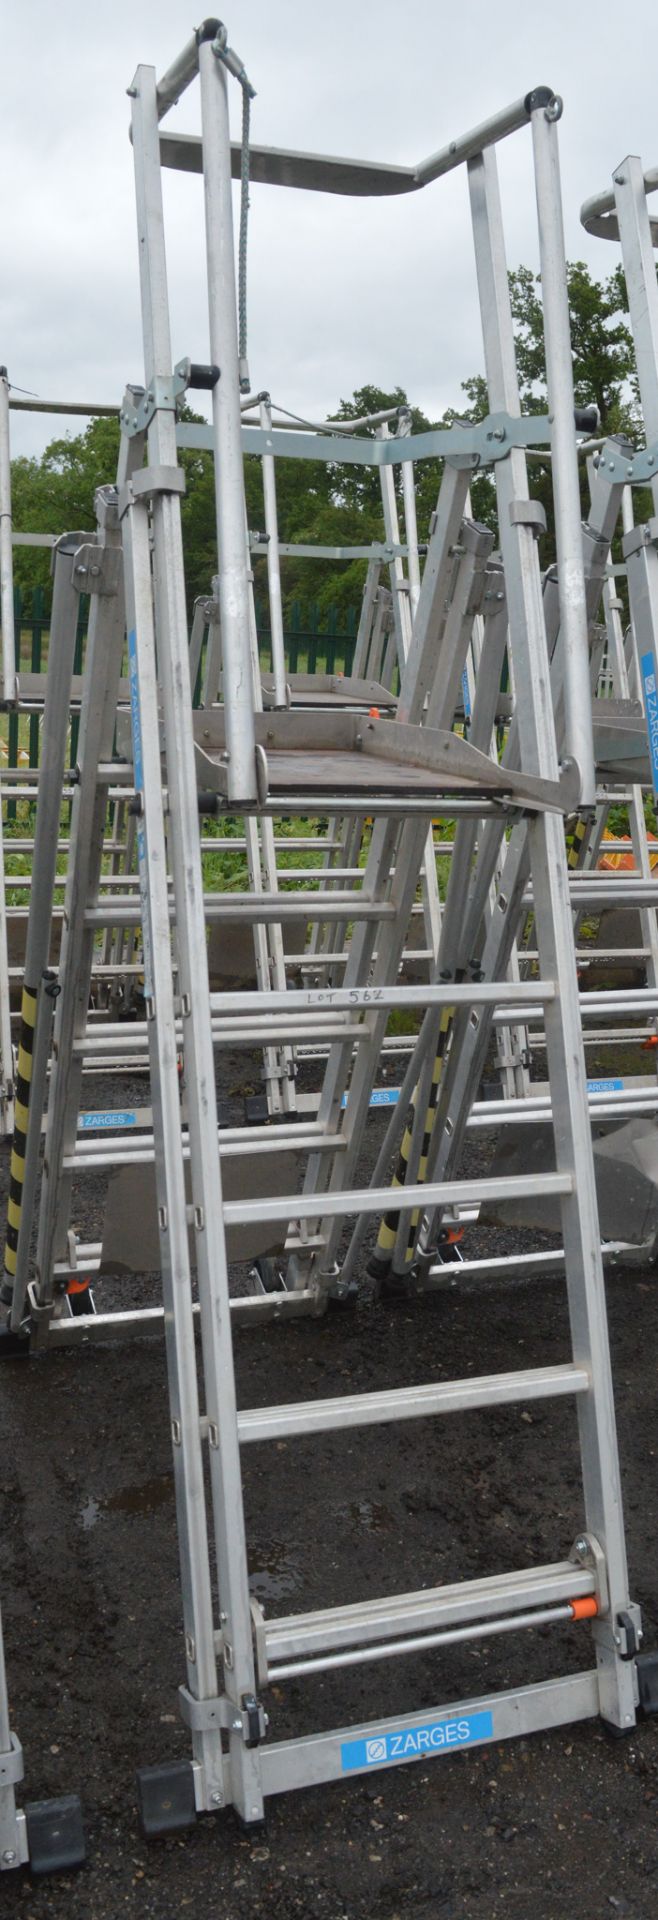 Zarges aluminium podium ladder A844595 - Image 2 of 2